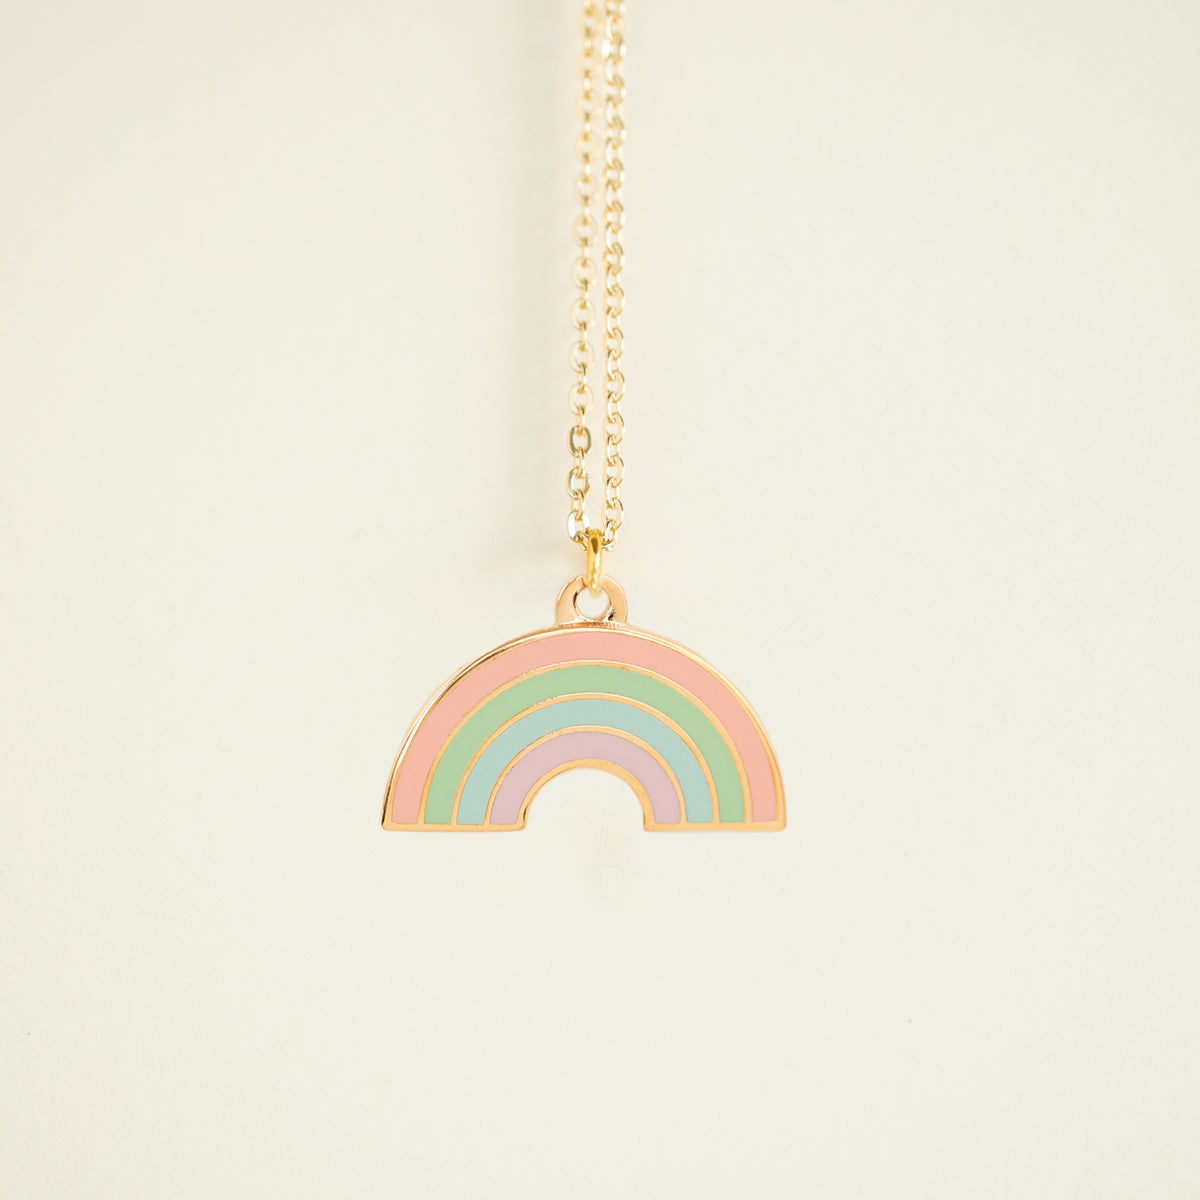 Tiny Charm Necklaces - Pastel Rainbow